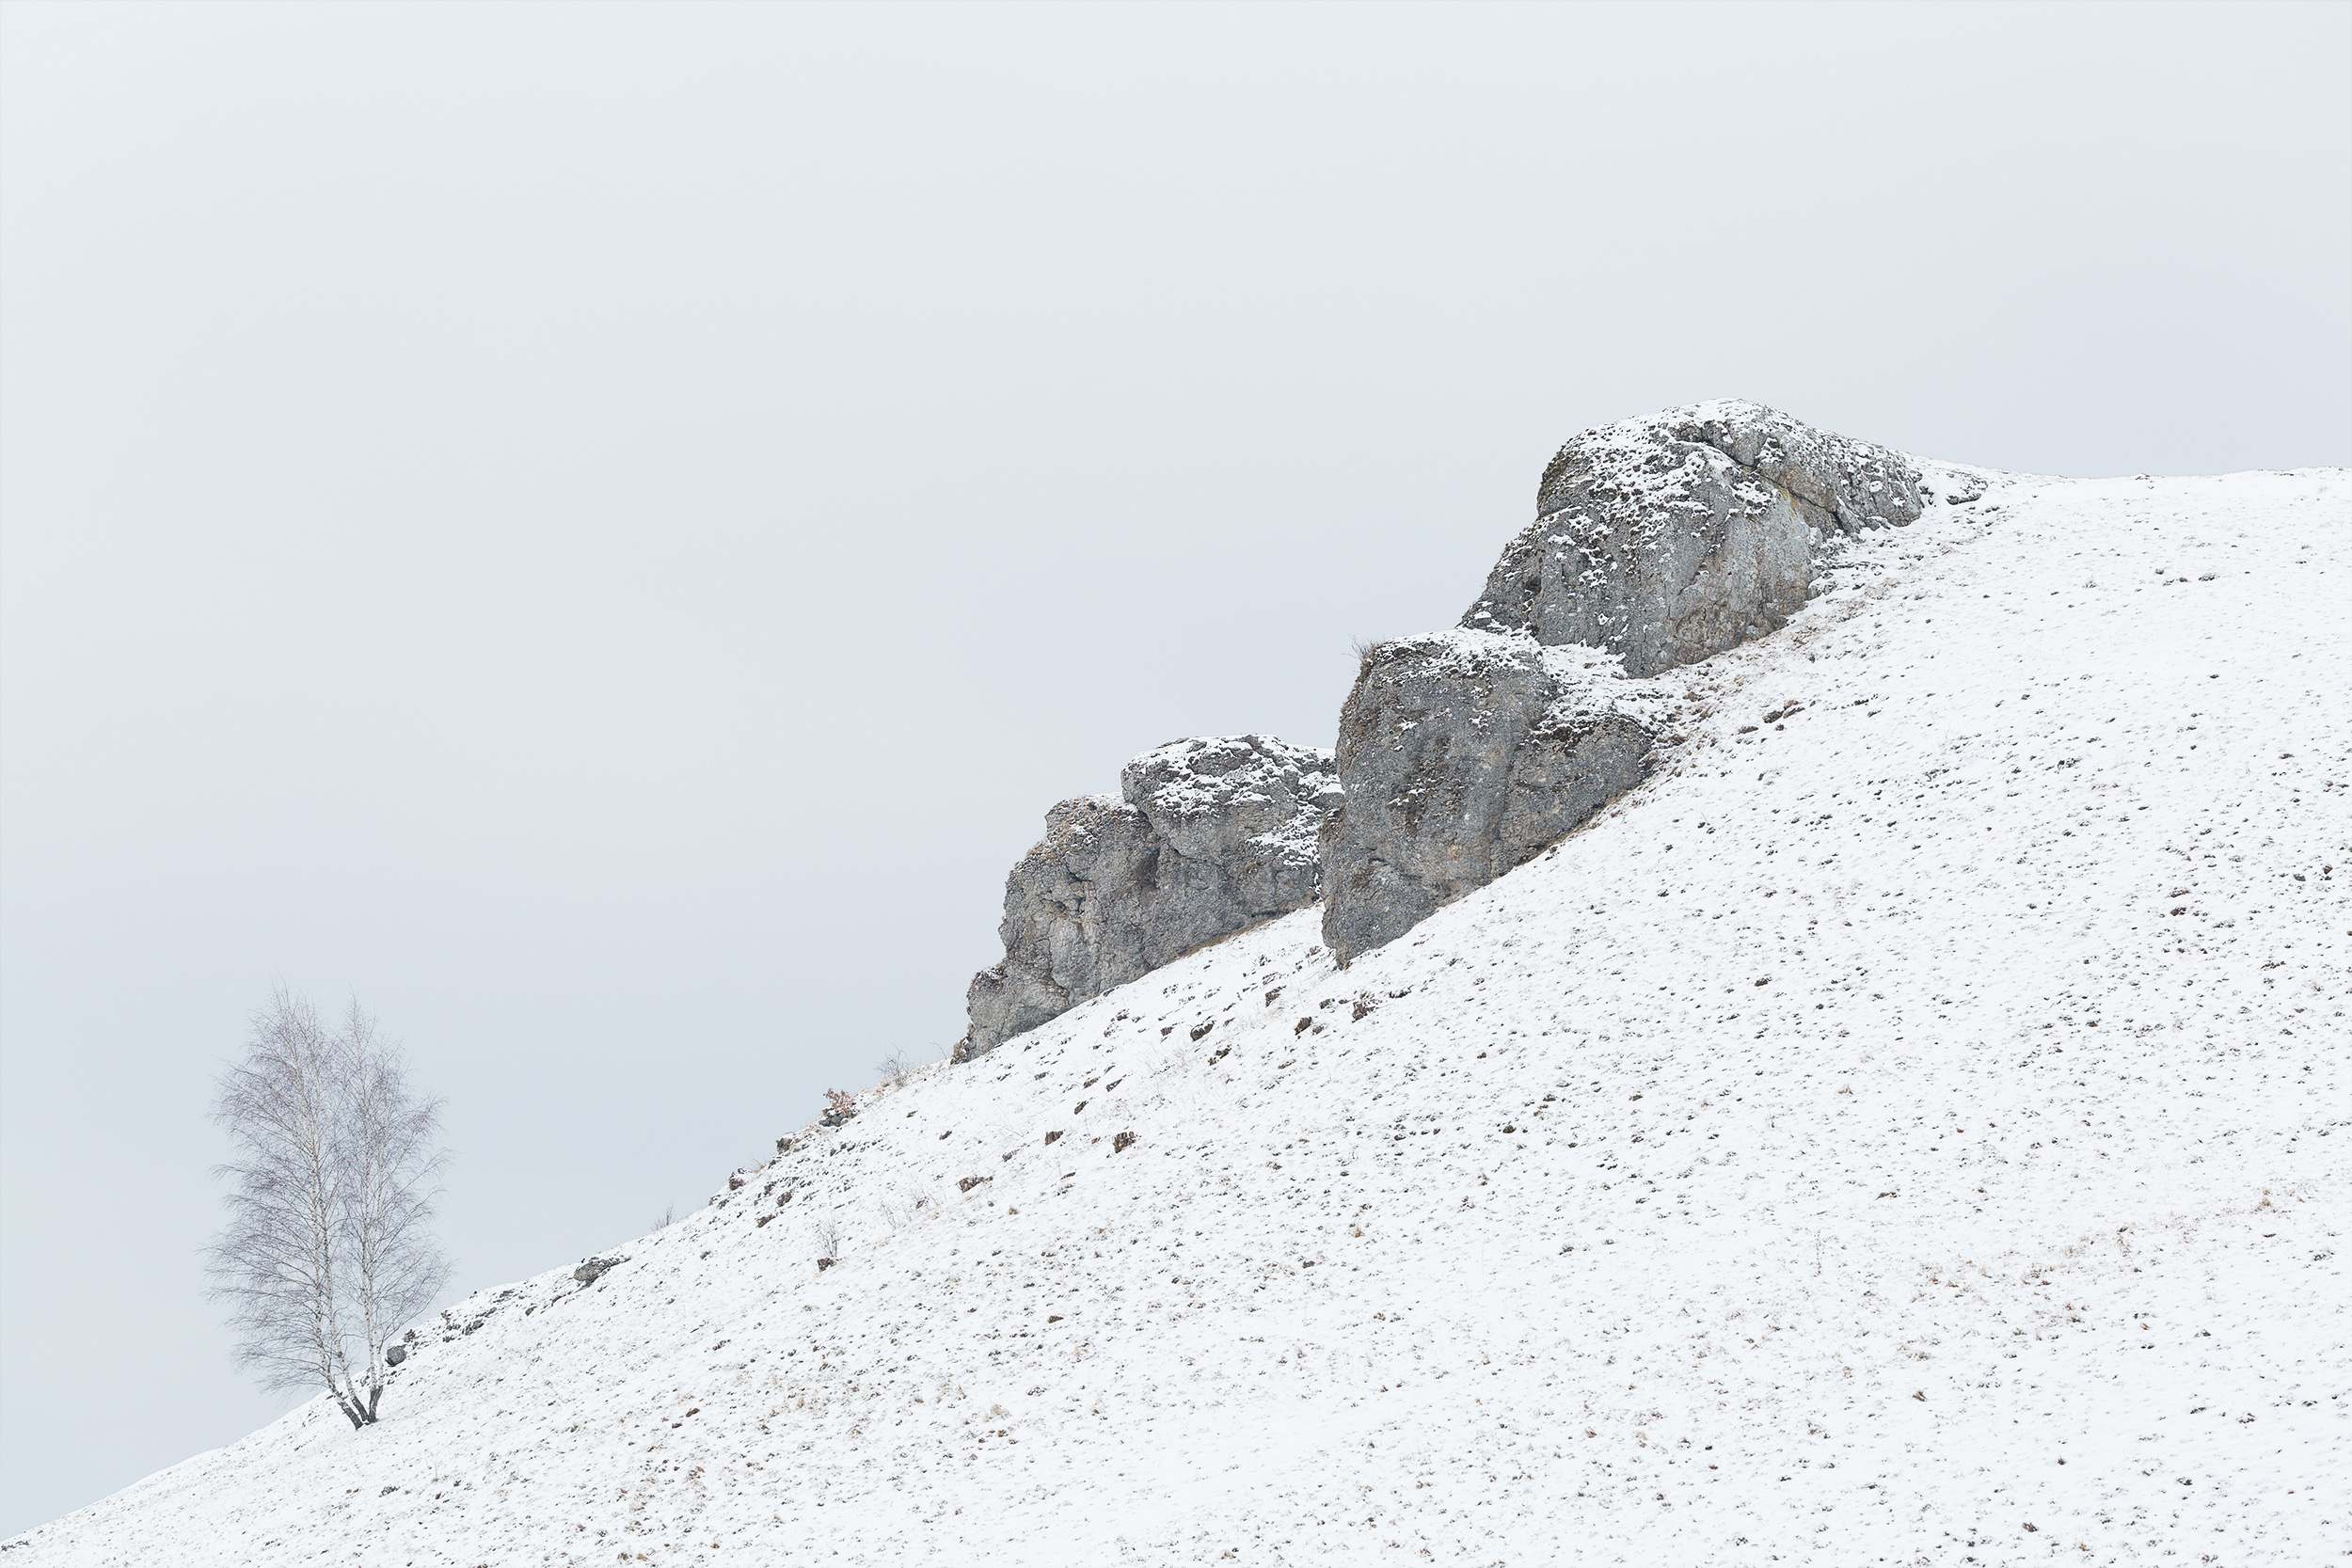 Aussichtspunkt Kalksteinfelsen bei Undingen im Schnee.